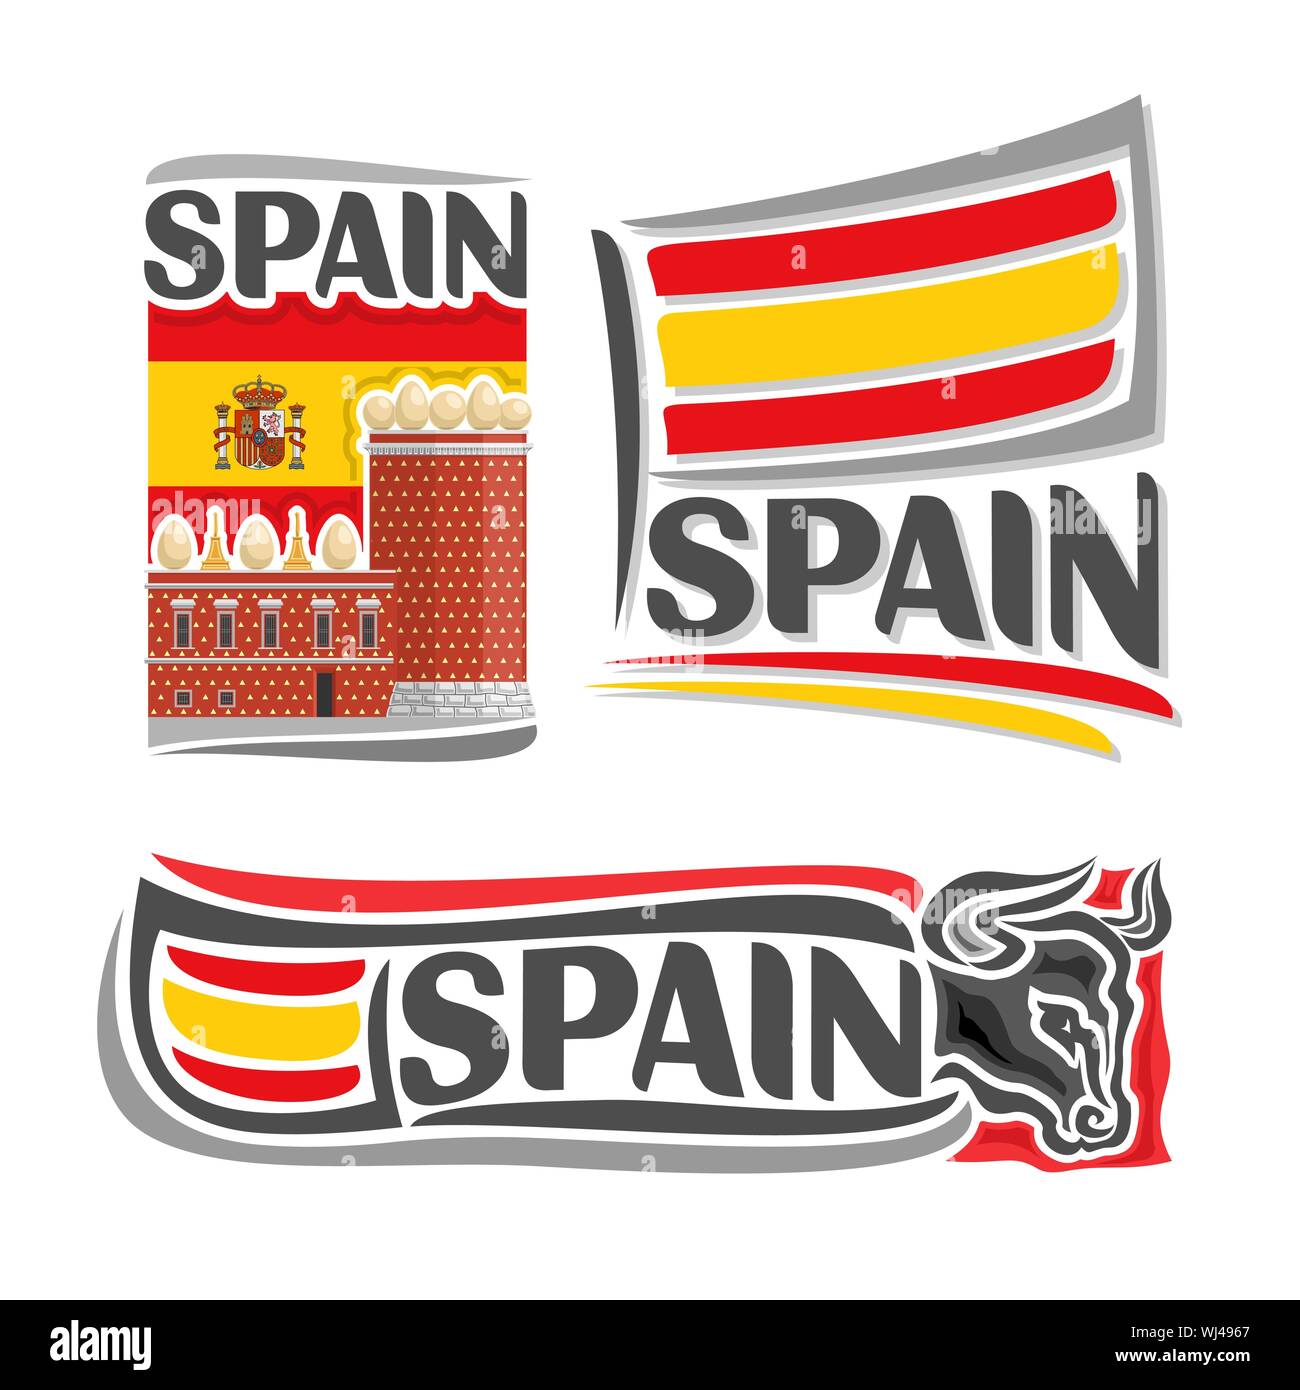 Ilustración vectorial del logotipo para España, 3 ilustraciones aisladas: bandera en el fondo del Museo Salvador DalÃ-, símbolo de España y arquitectura Ilustración del Vector